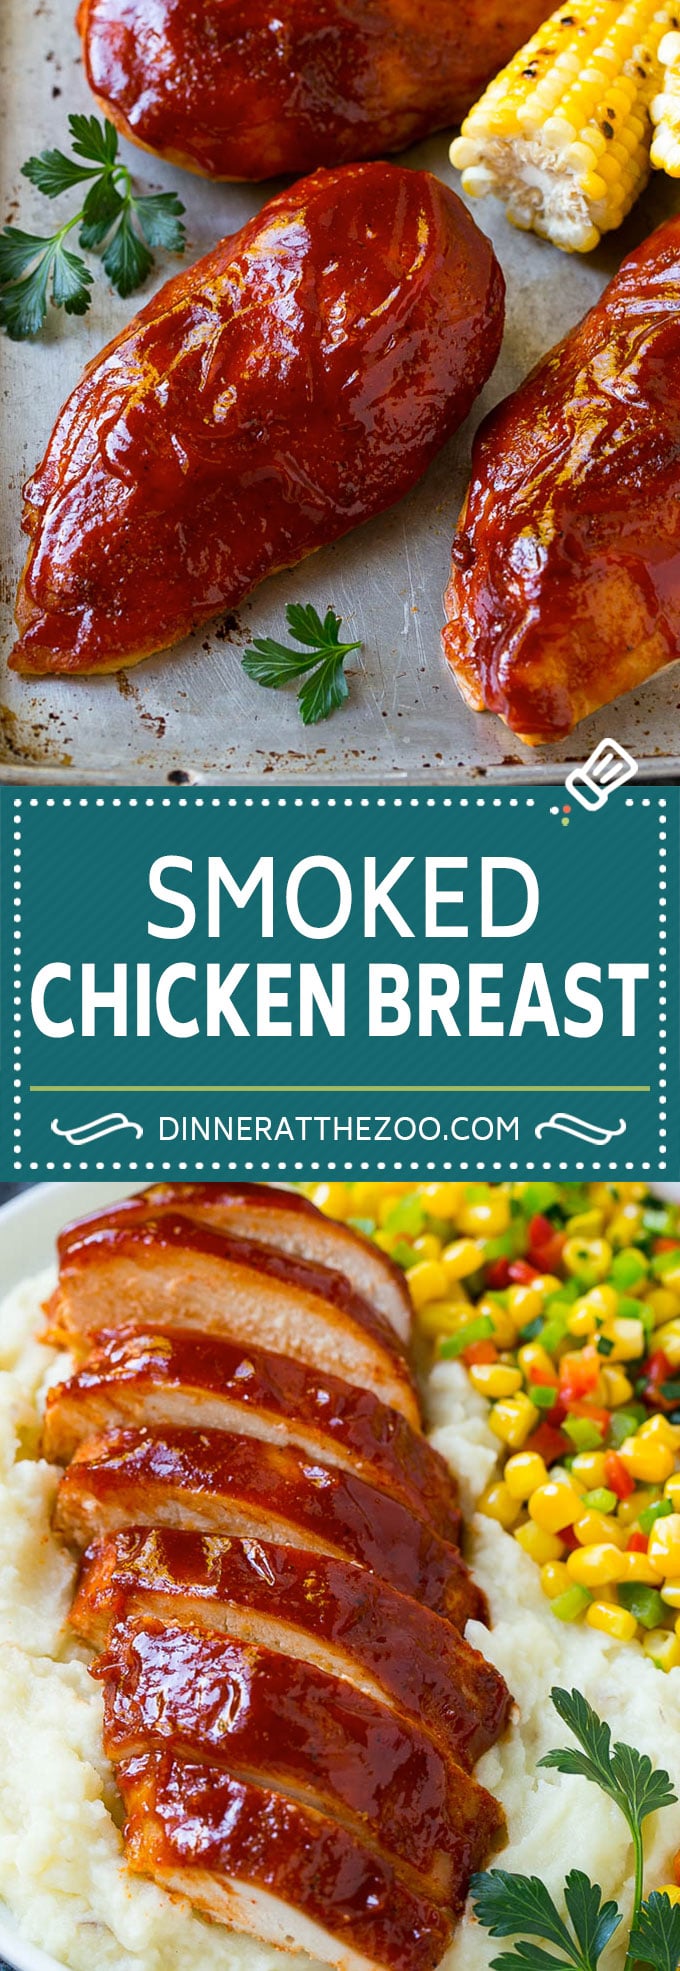 Smoked Chicken Breast Recipe | BBQ Chicken | Smoked Chicken #bbq #chicken #smoker #dinner #glutenfree #dinneratthezoo